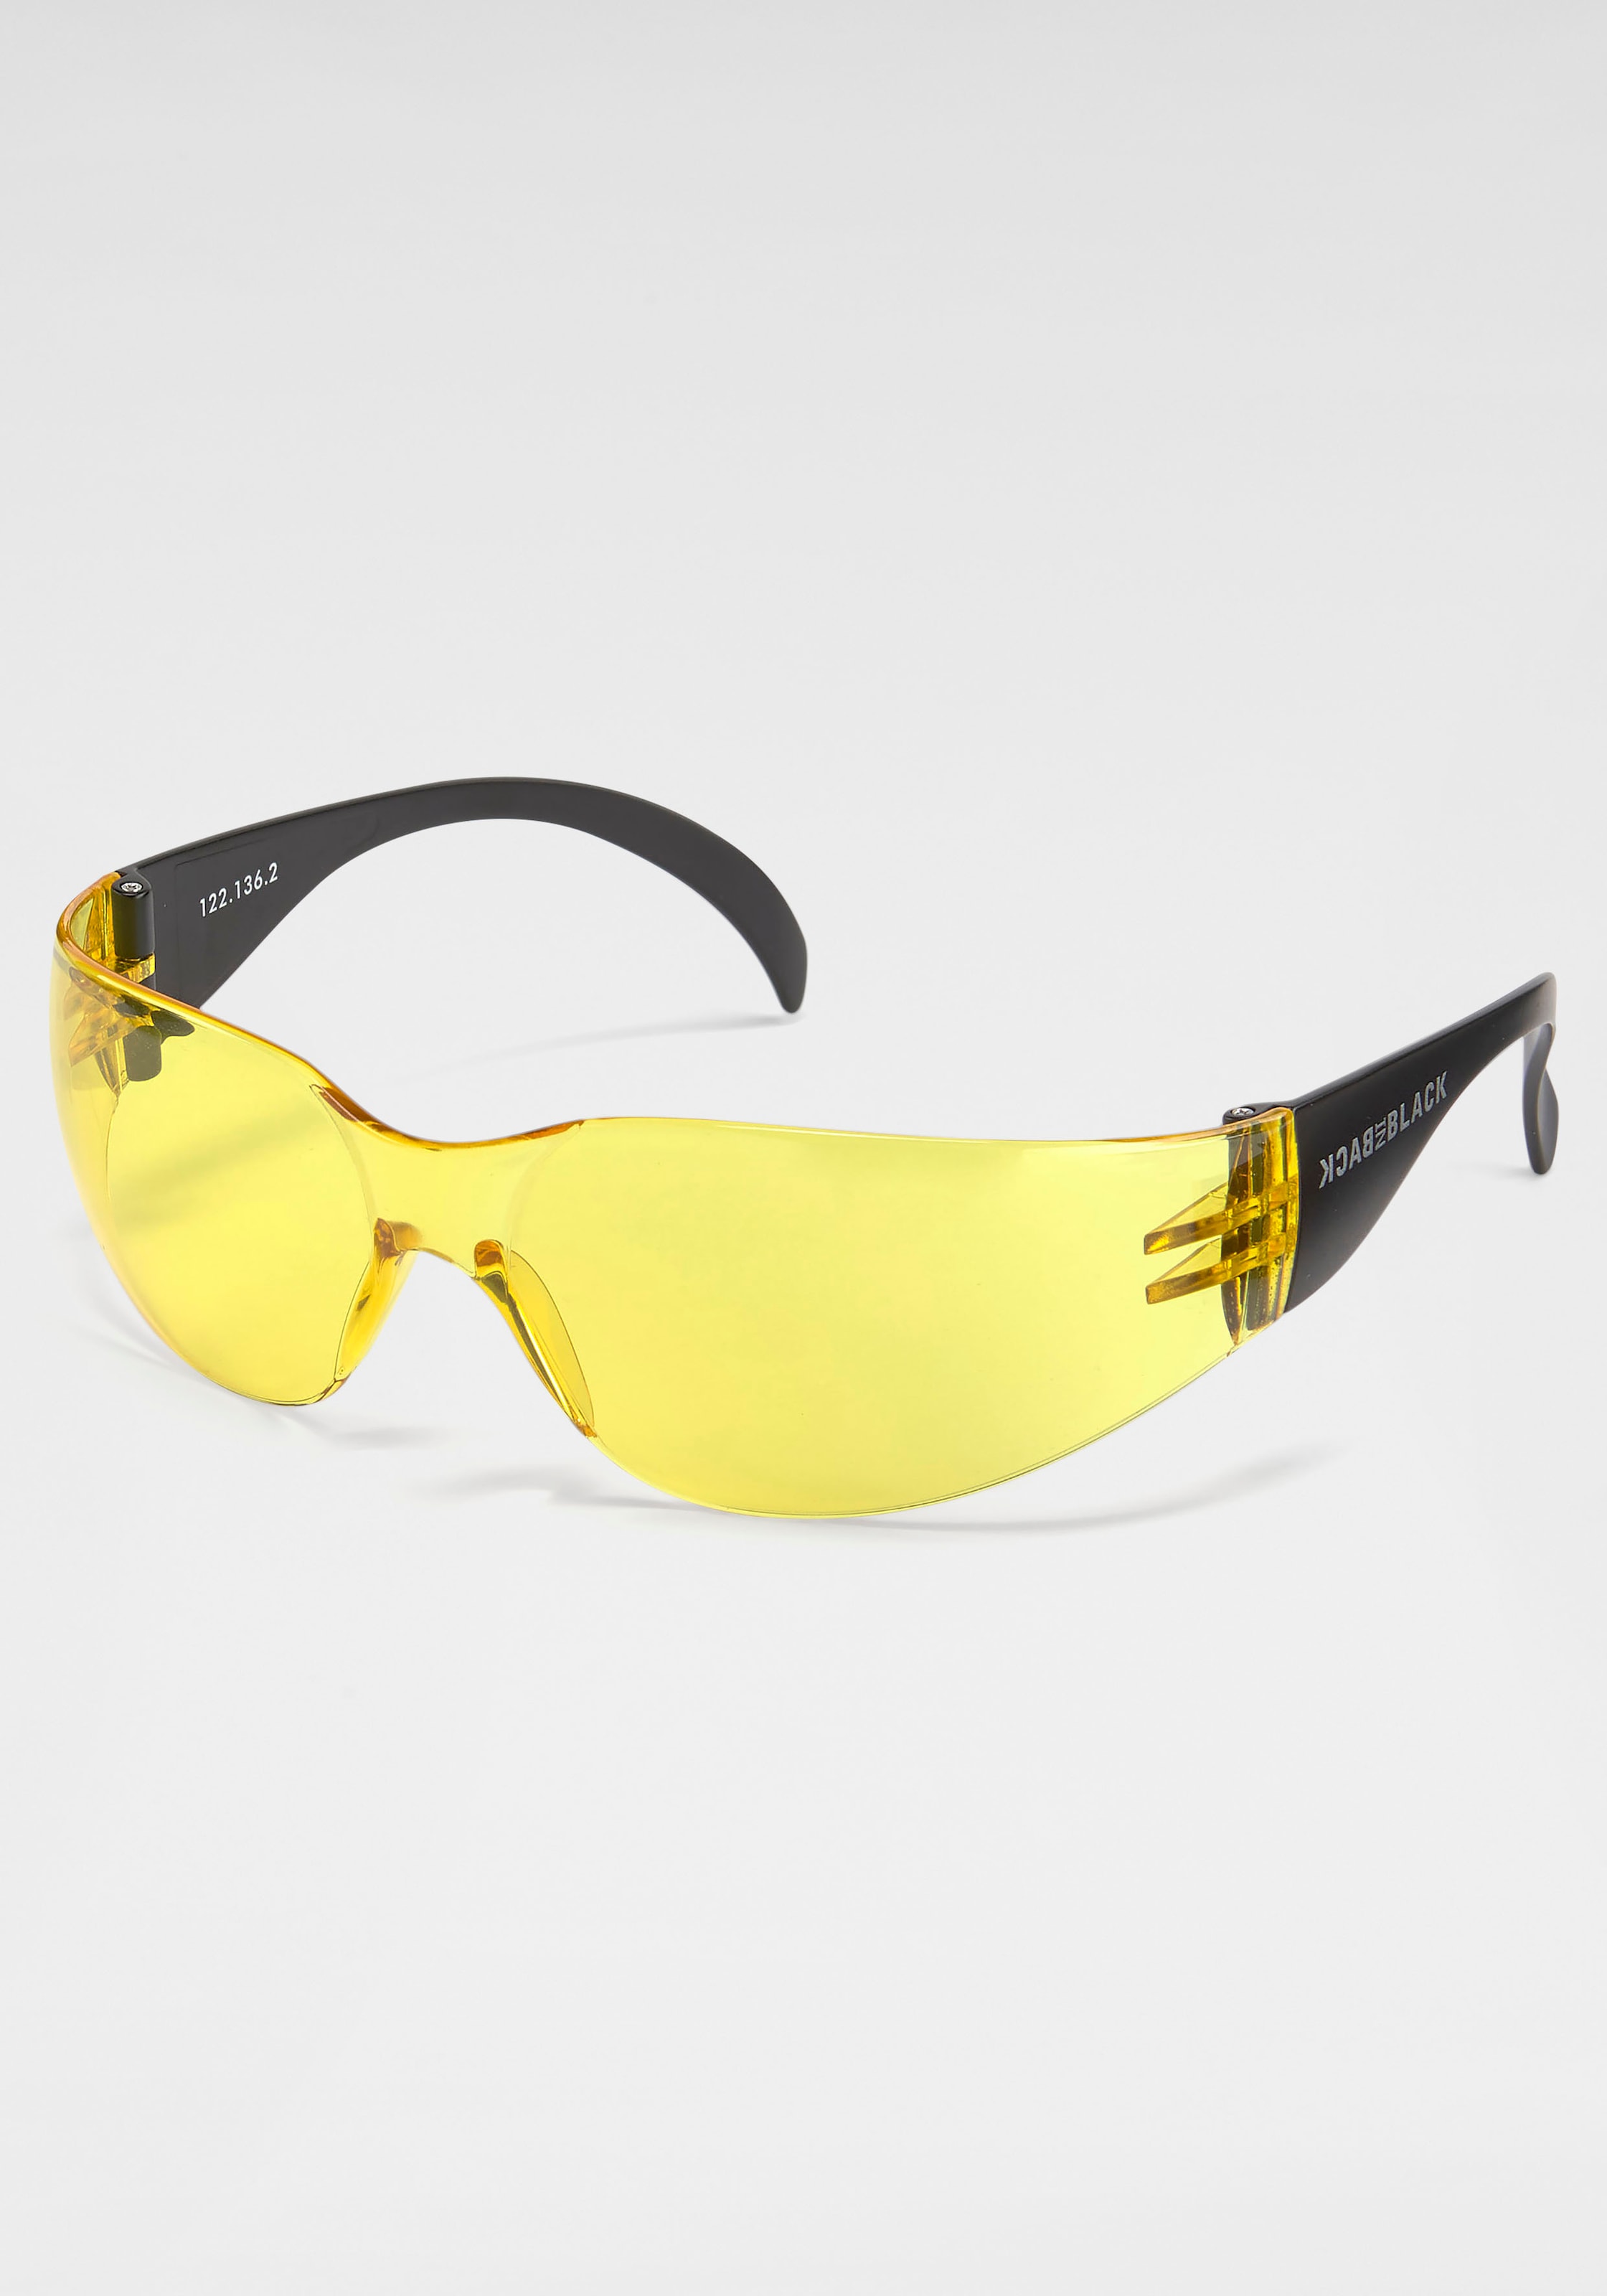 BACK IN für kaufen BAUR Randlos | Eyewear Sonnenbrille, BLACK